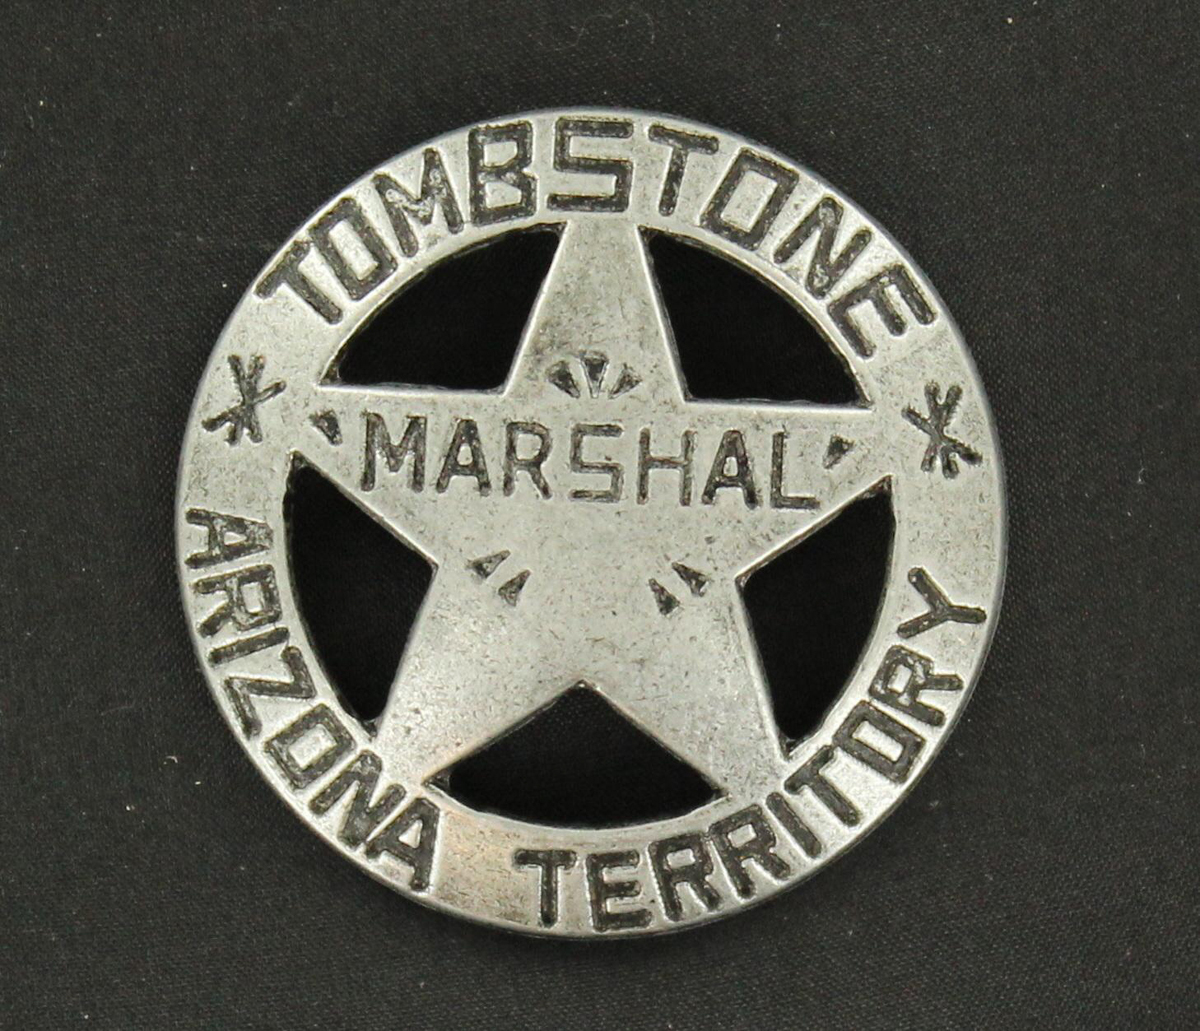 28222 Tombstone Arizona Toy Badge